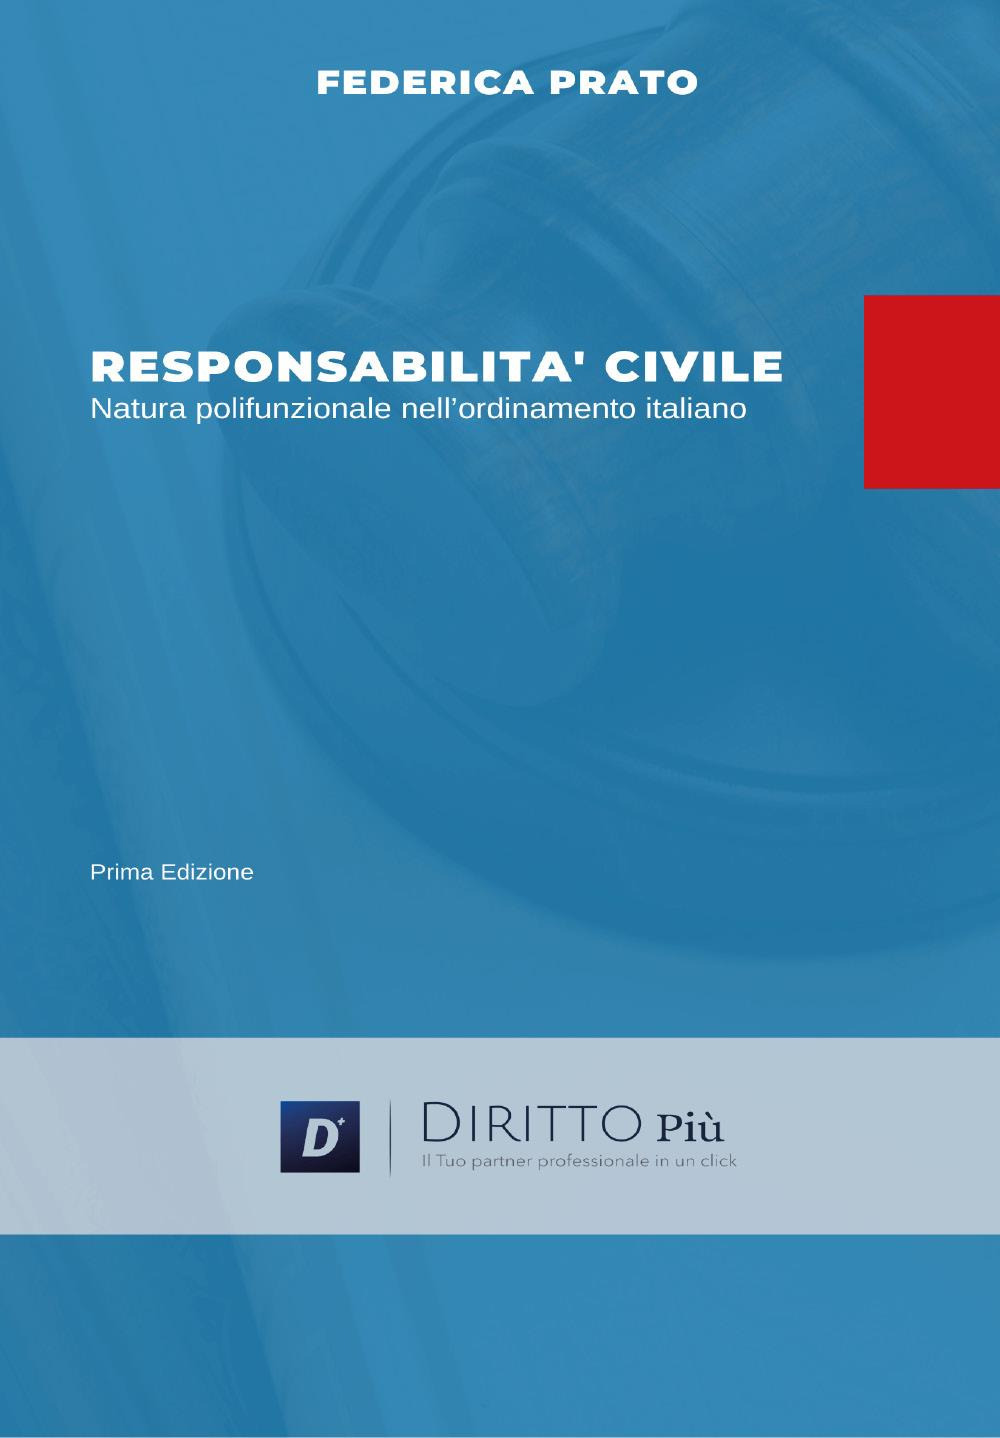 Responsabilità civile, natura polifunzionale nell'ordinamento italiano